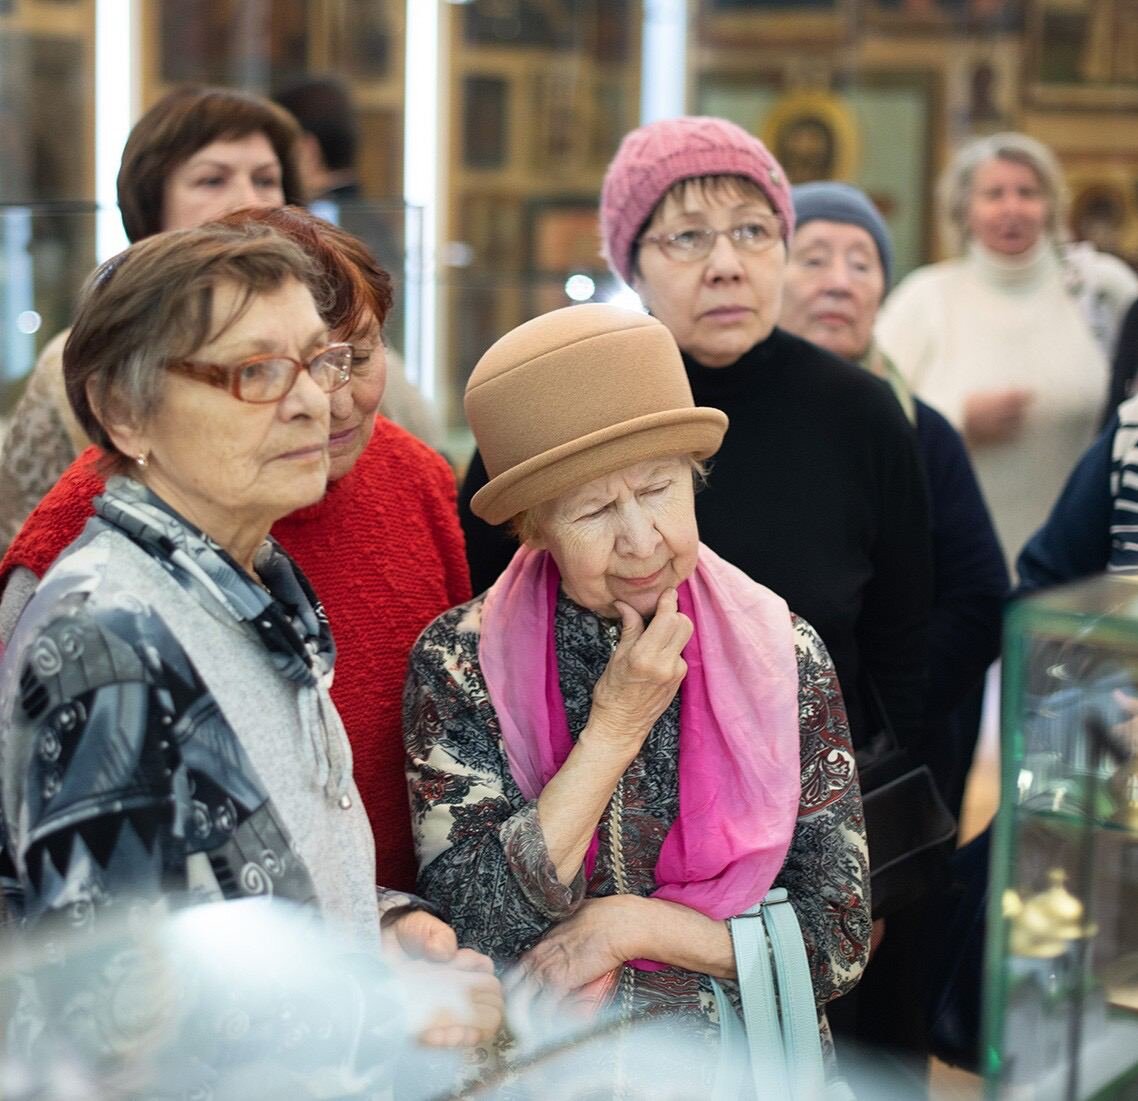 Экскурсии московское долголетие для пенсионеров в москве. Экскурсии для пожилых. Экскурсии для пенсионеров. Пожилые люди в музее. Пенсионеры.